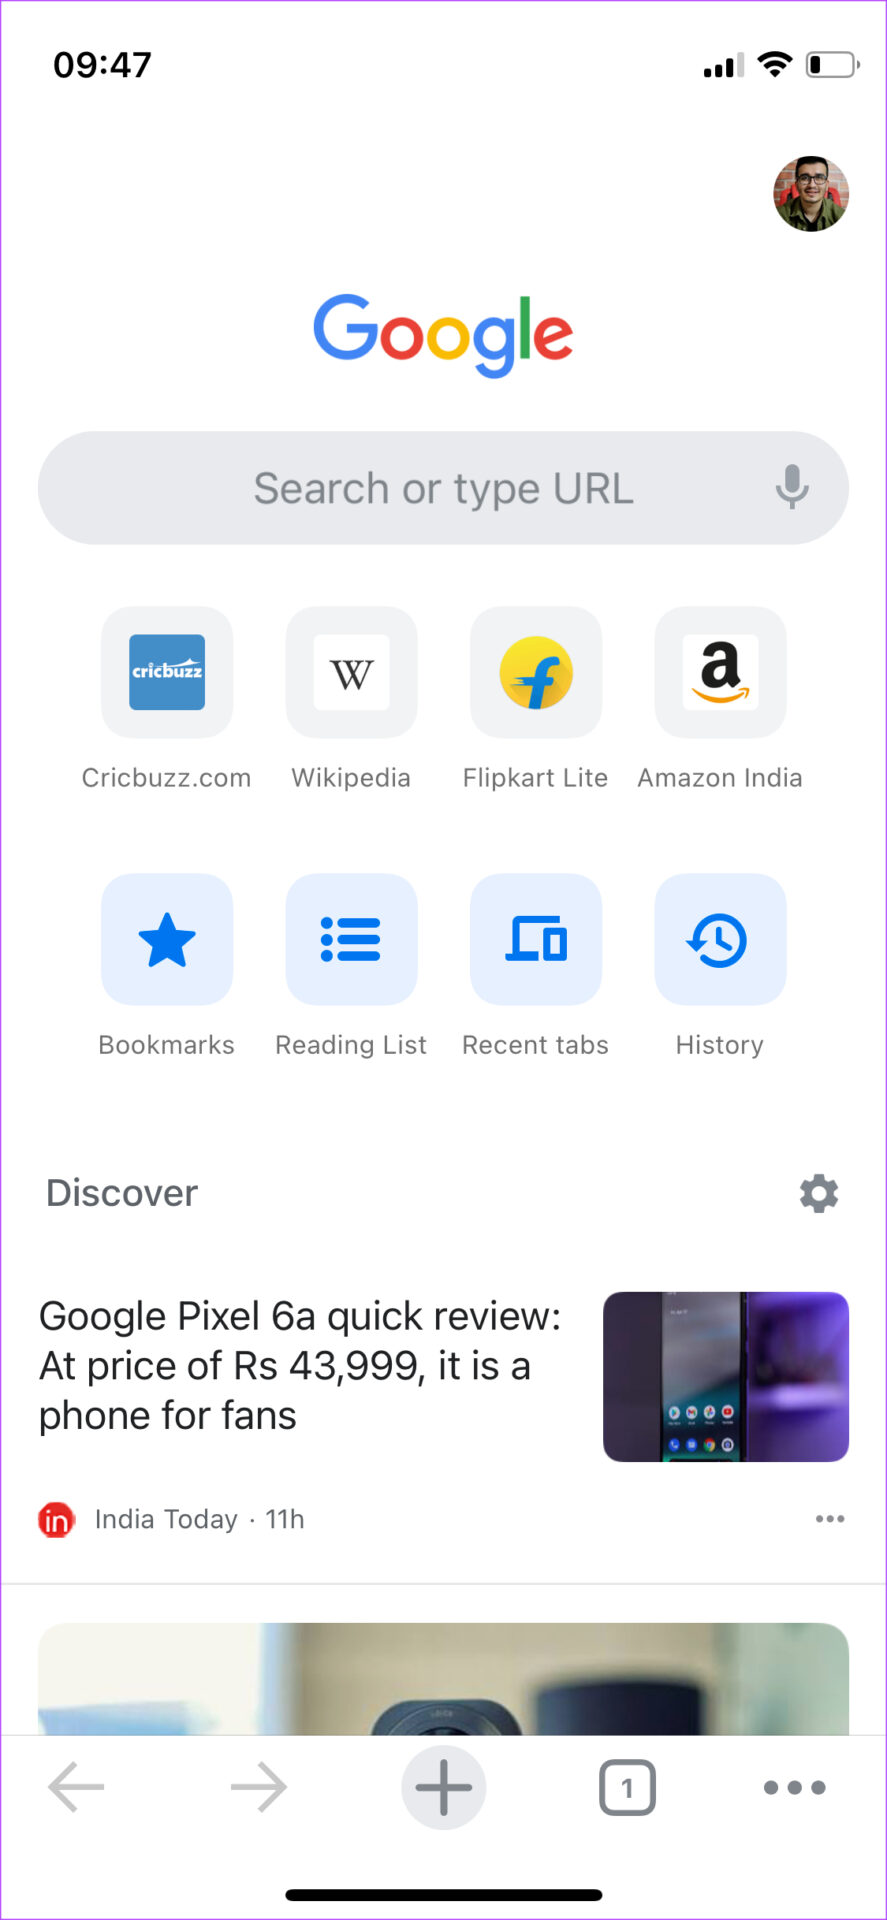 Chrome on iOS